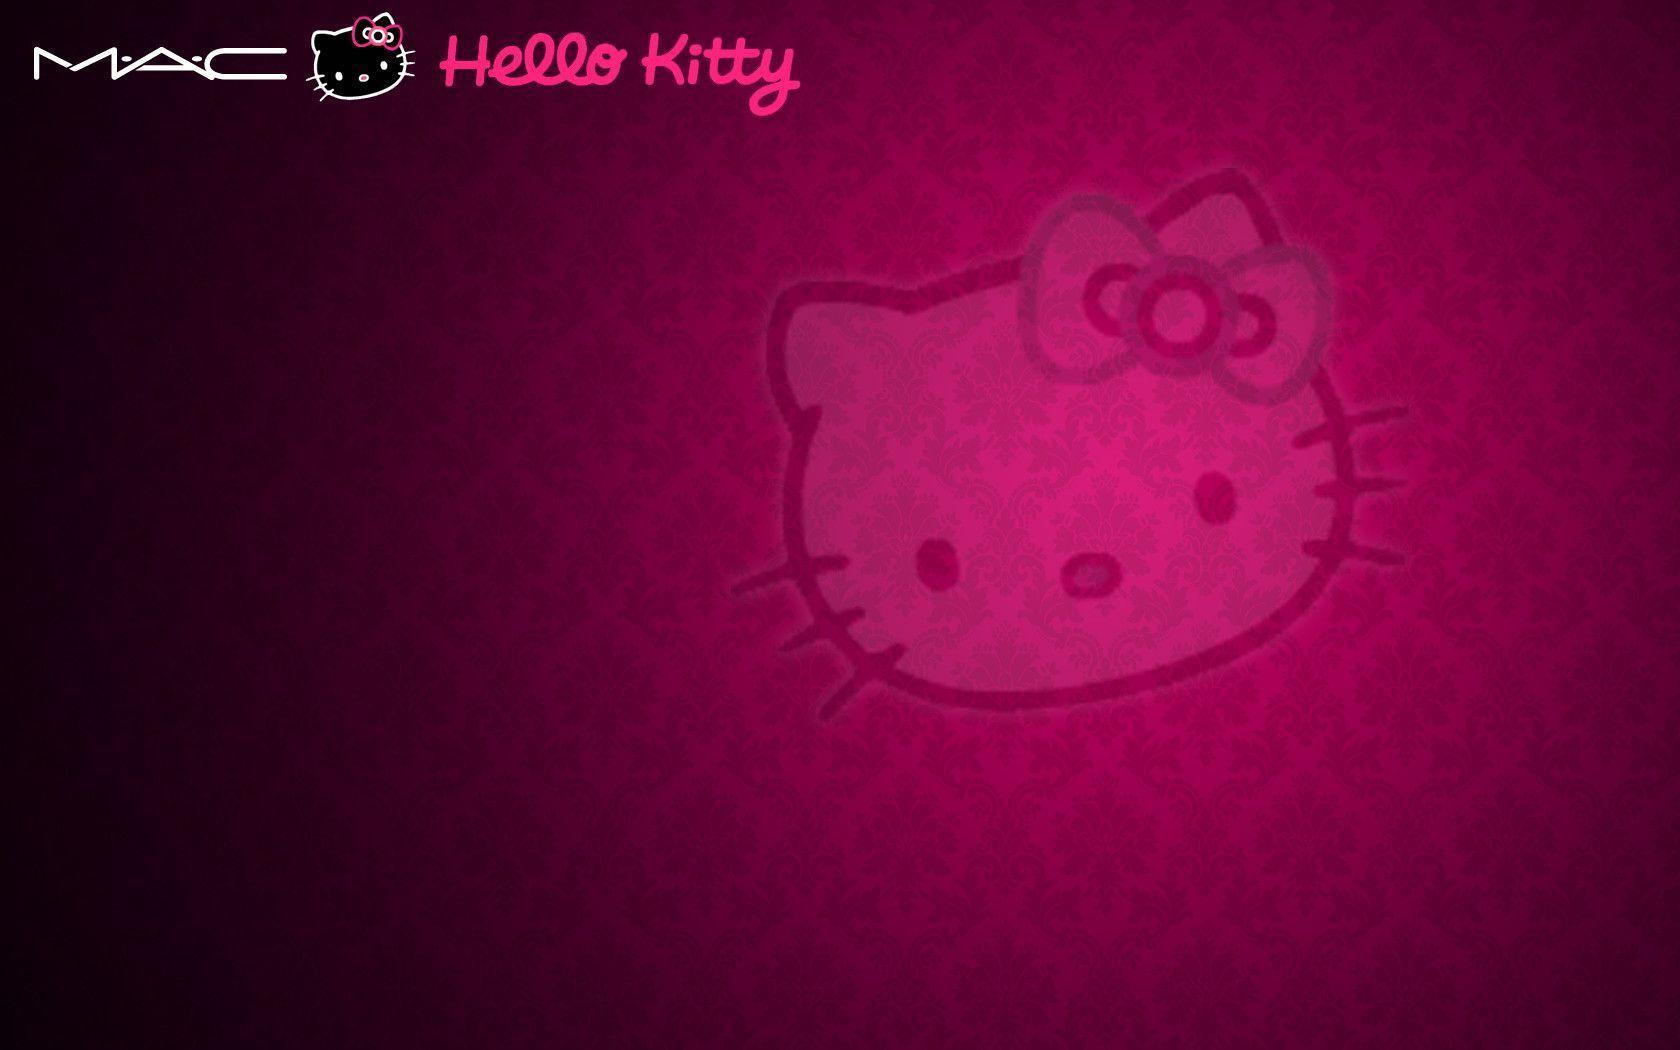 Hello Kitty Wallpaper For Bedroom 16233 Wallpaper. hdesktopict